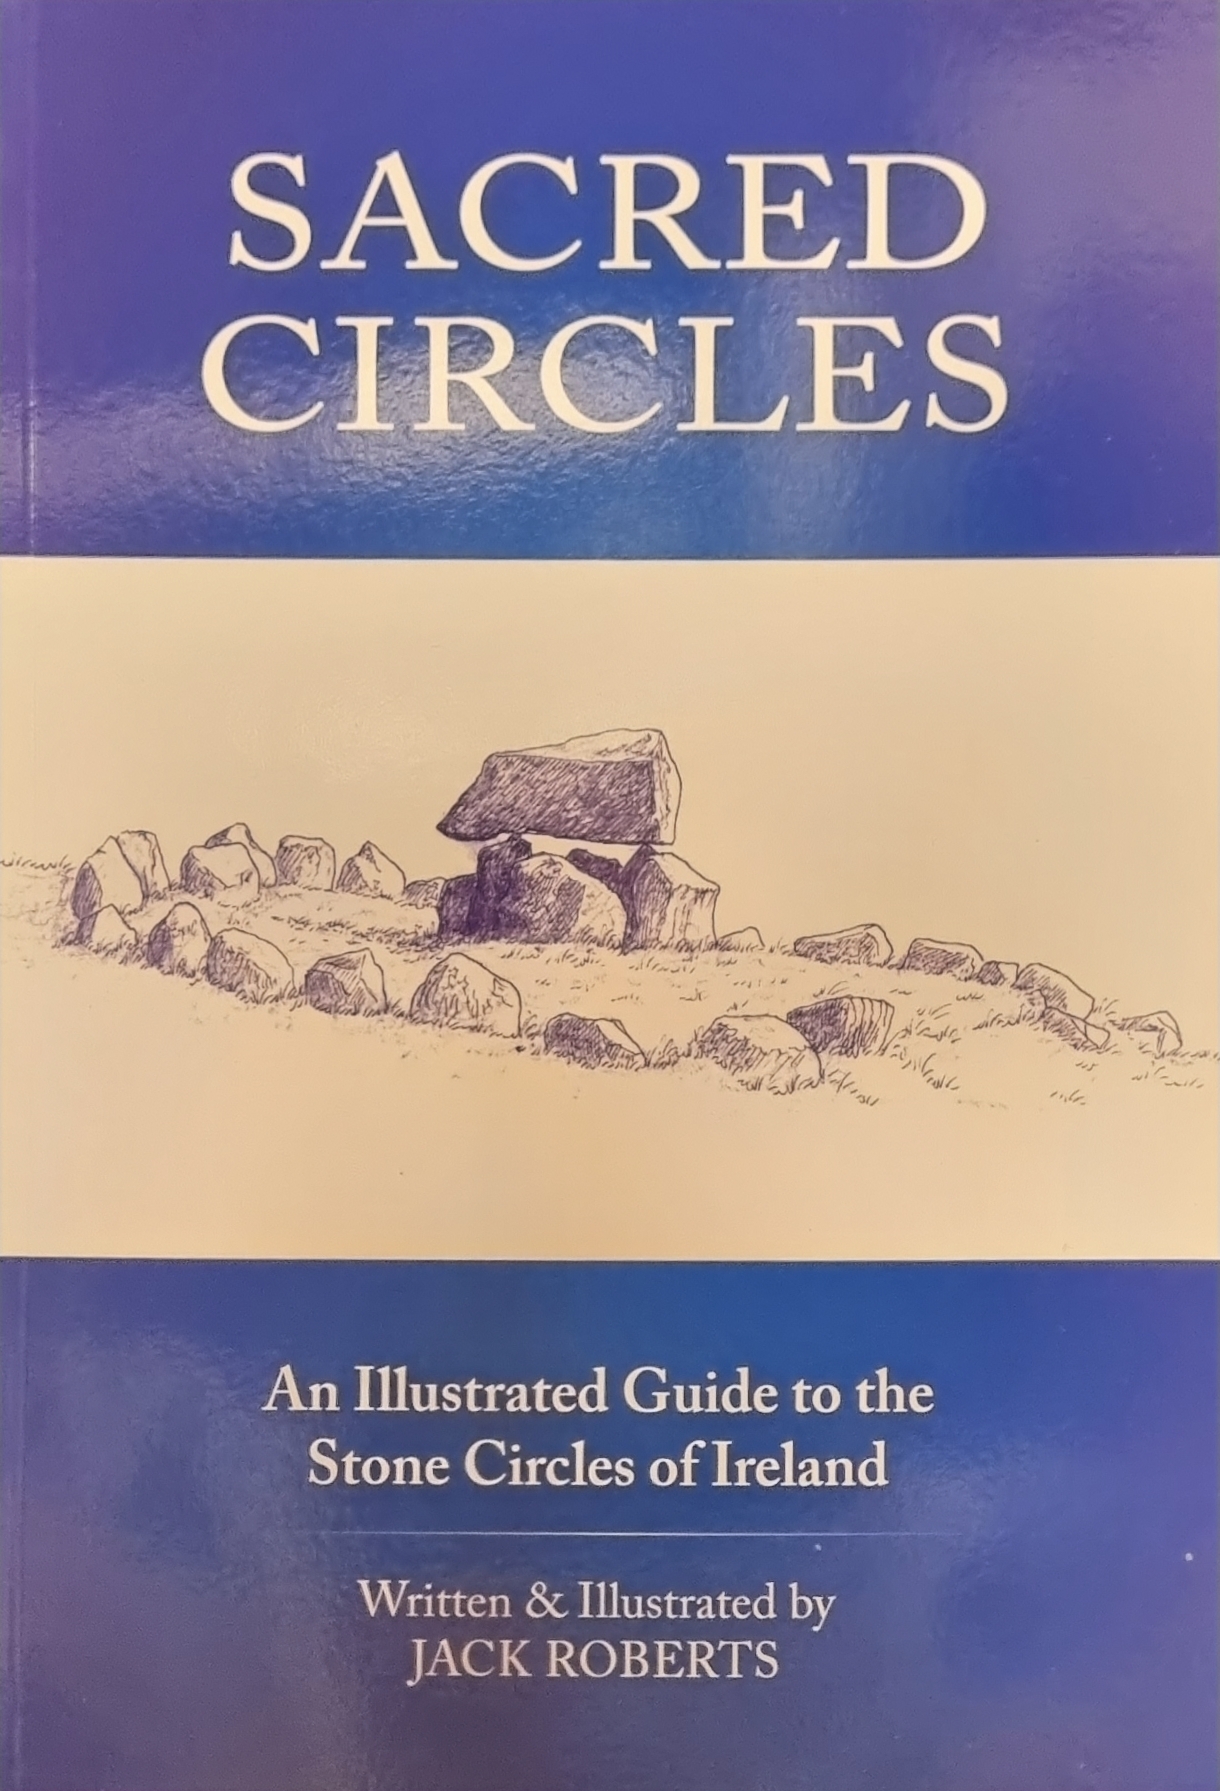 Sacred Circles by Jack Roberts